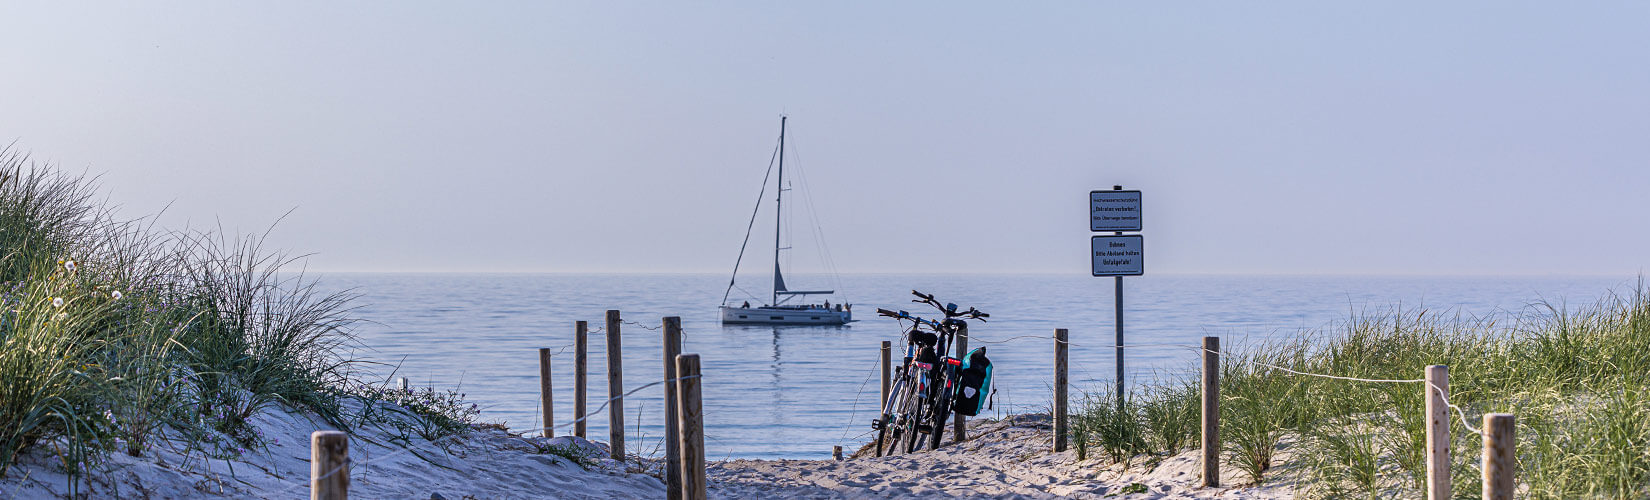 Urlaub an der Ostsee mit Rad und Hund